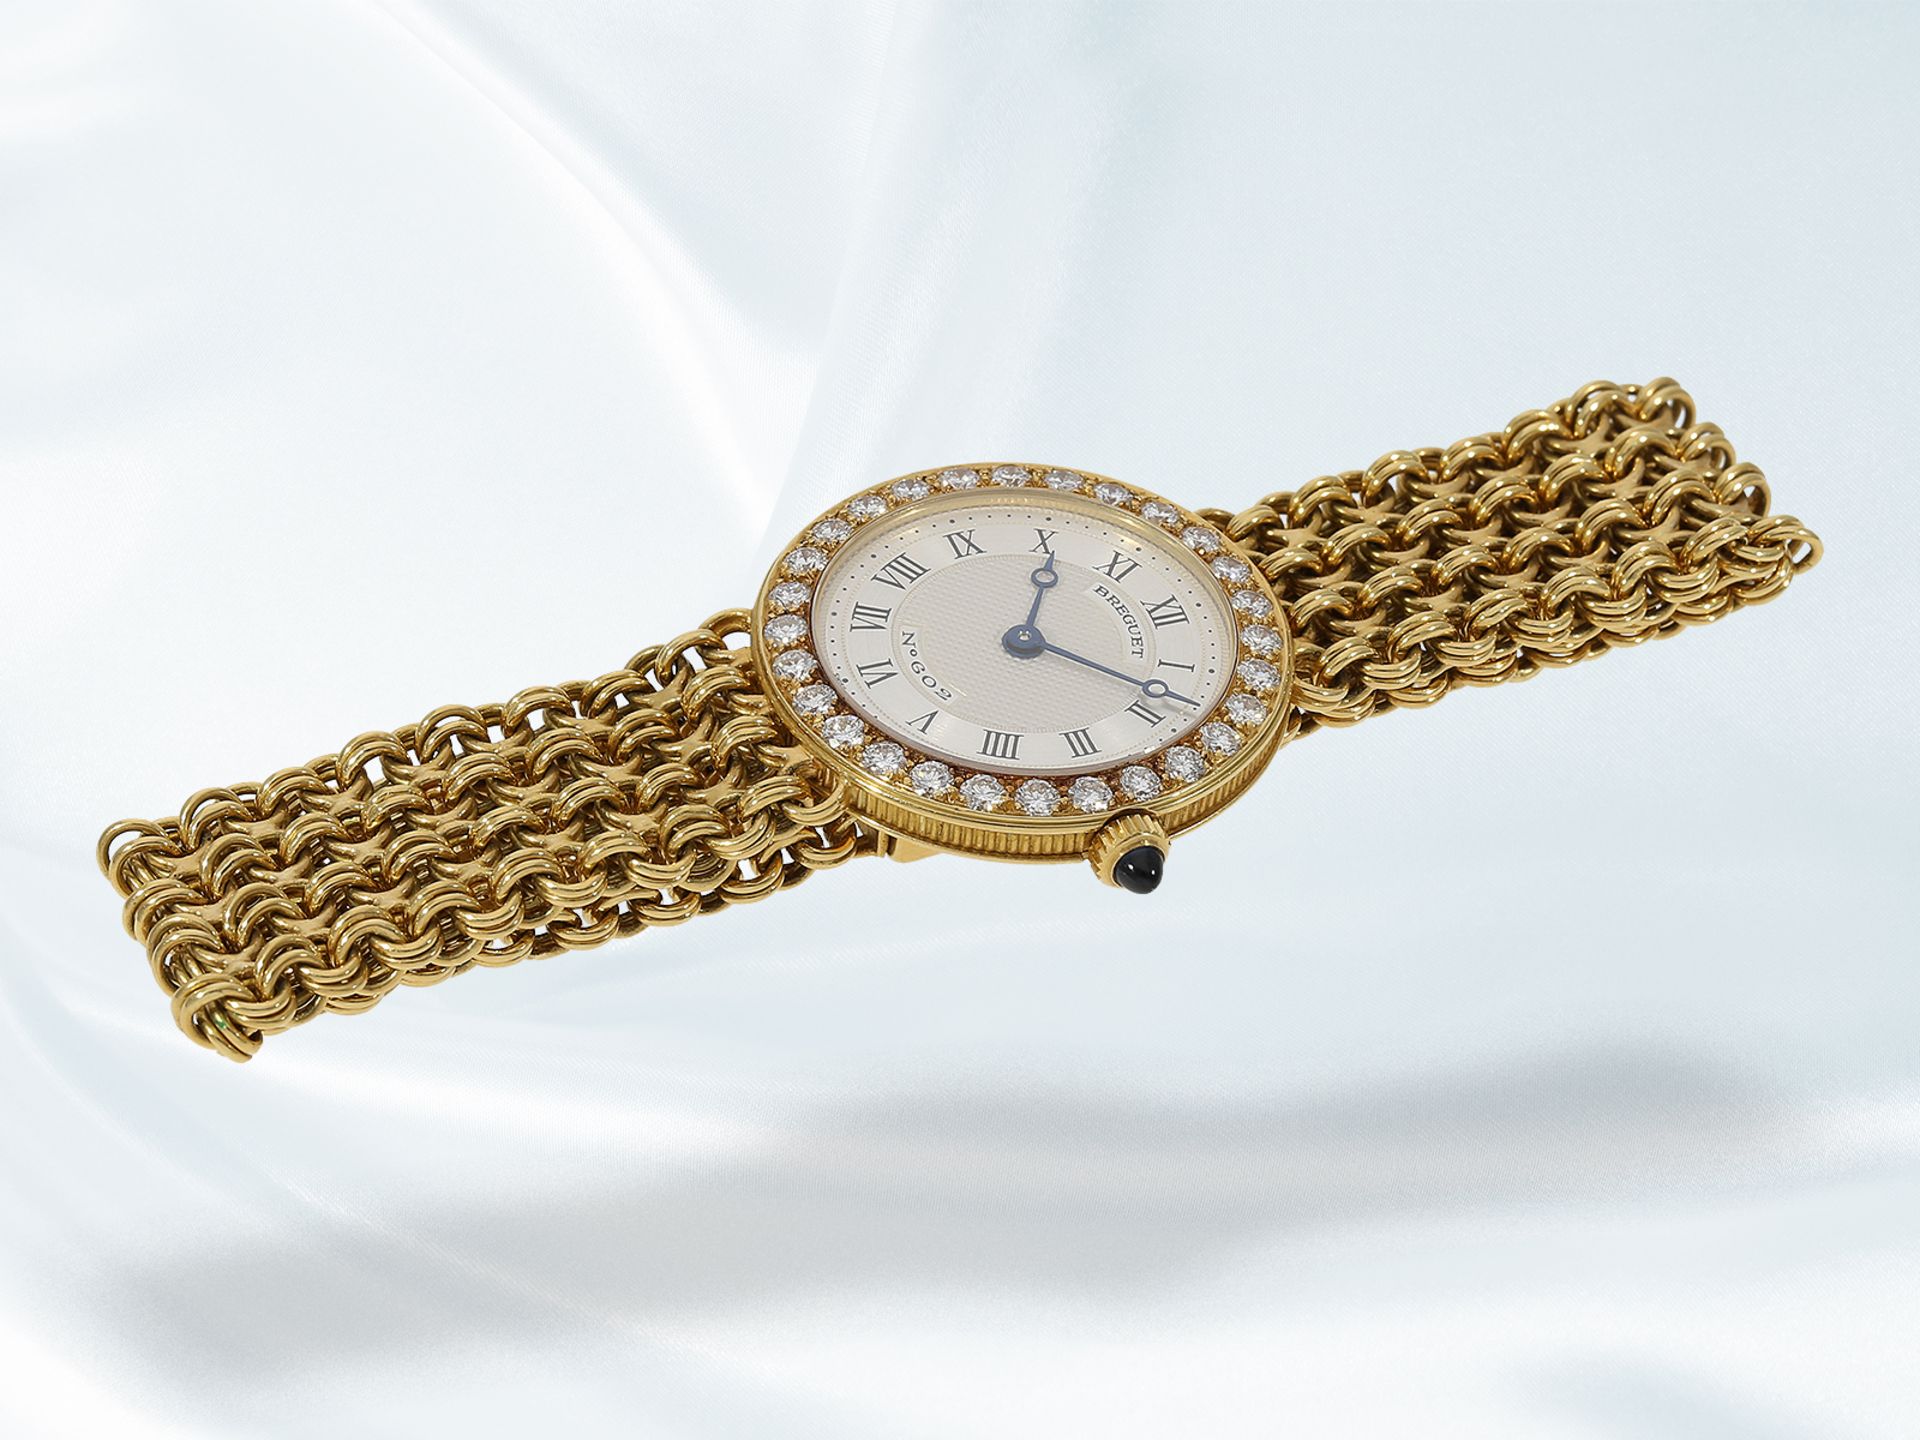 Armbanduhr: elegante, hochwertige Damenuhr von Breguet, "Breguet No. 602", 18K Gold mit Brillanten - Bild 3 aus 9